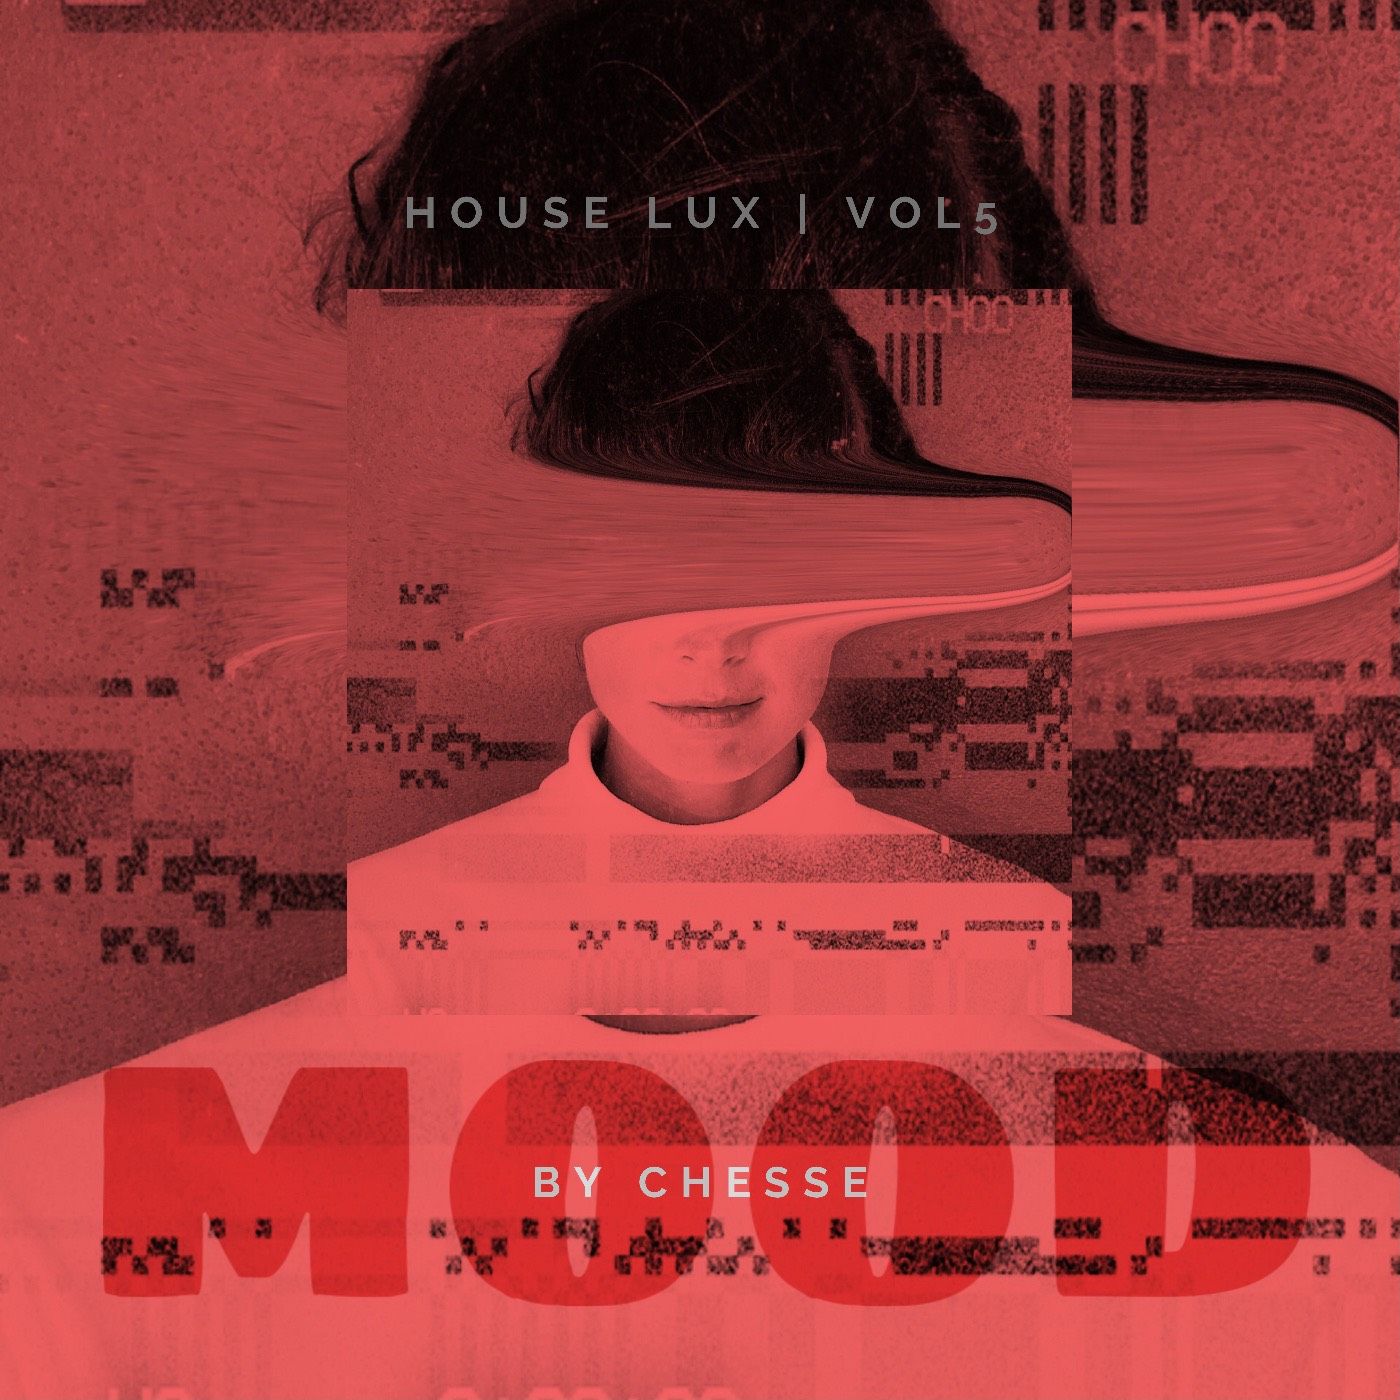 Íoslódáil MOOD - By Chesse - House lux #005